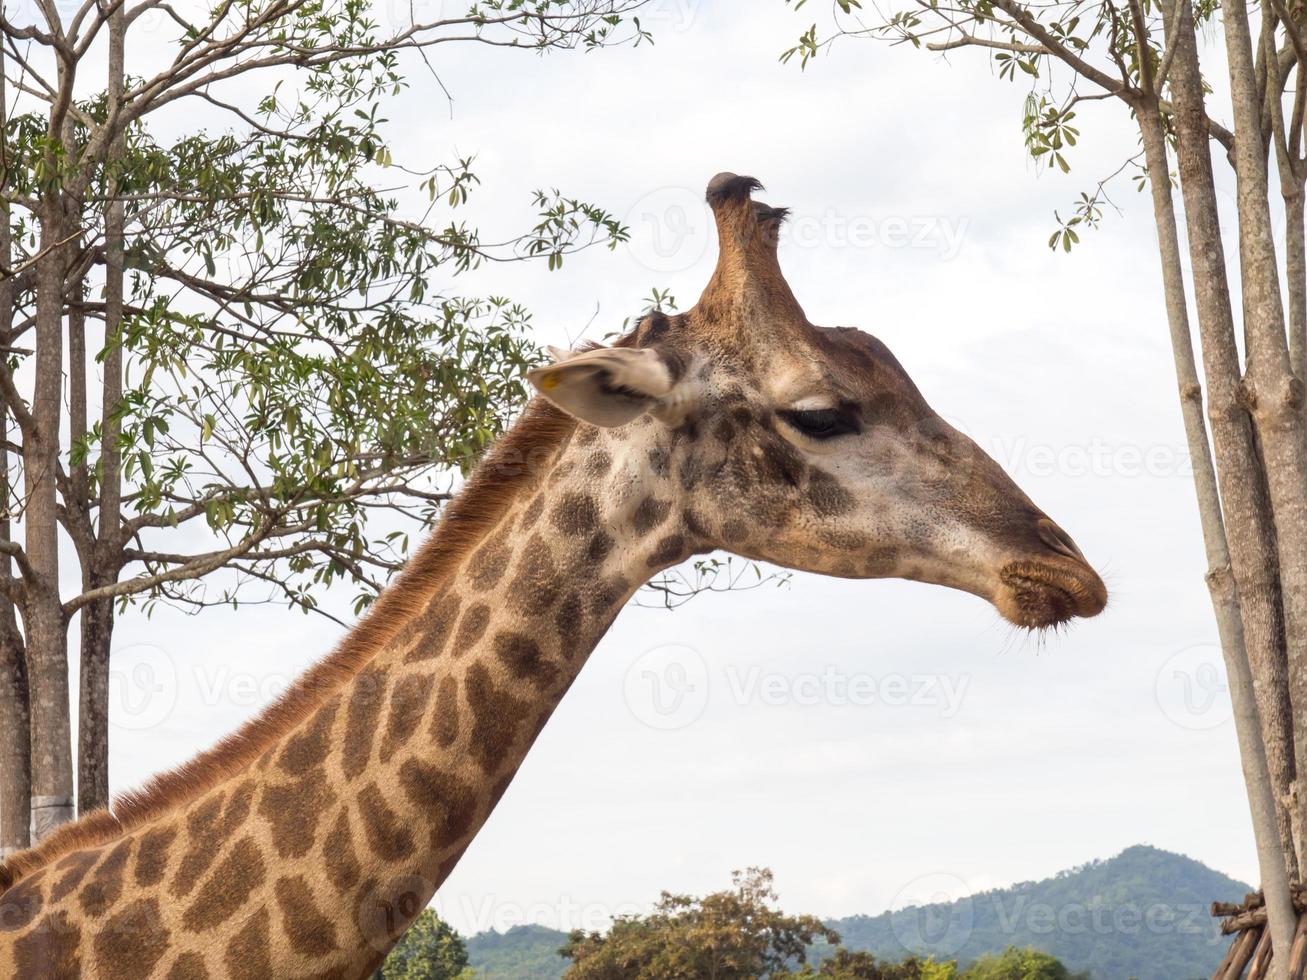 Giraffe is tallest animal photo